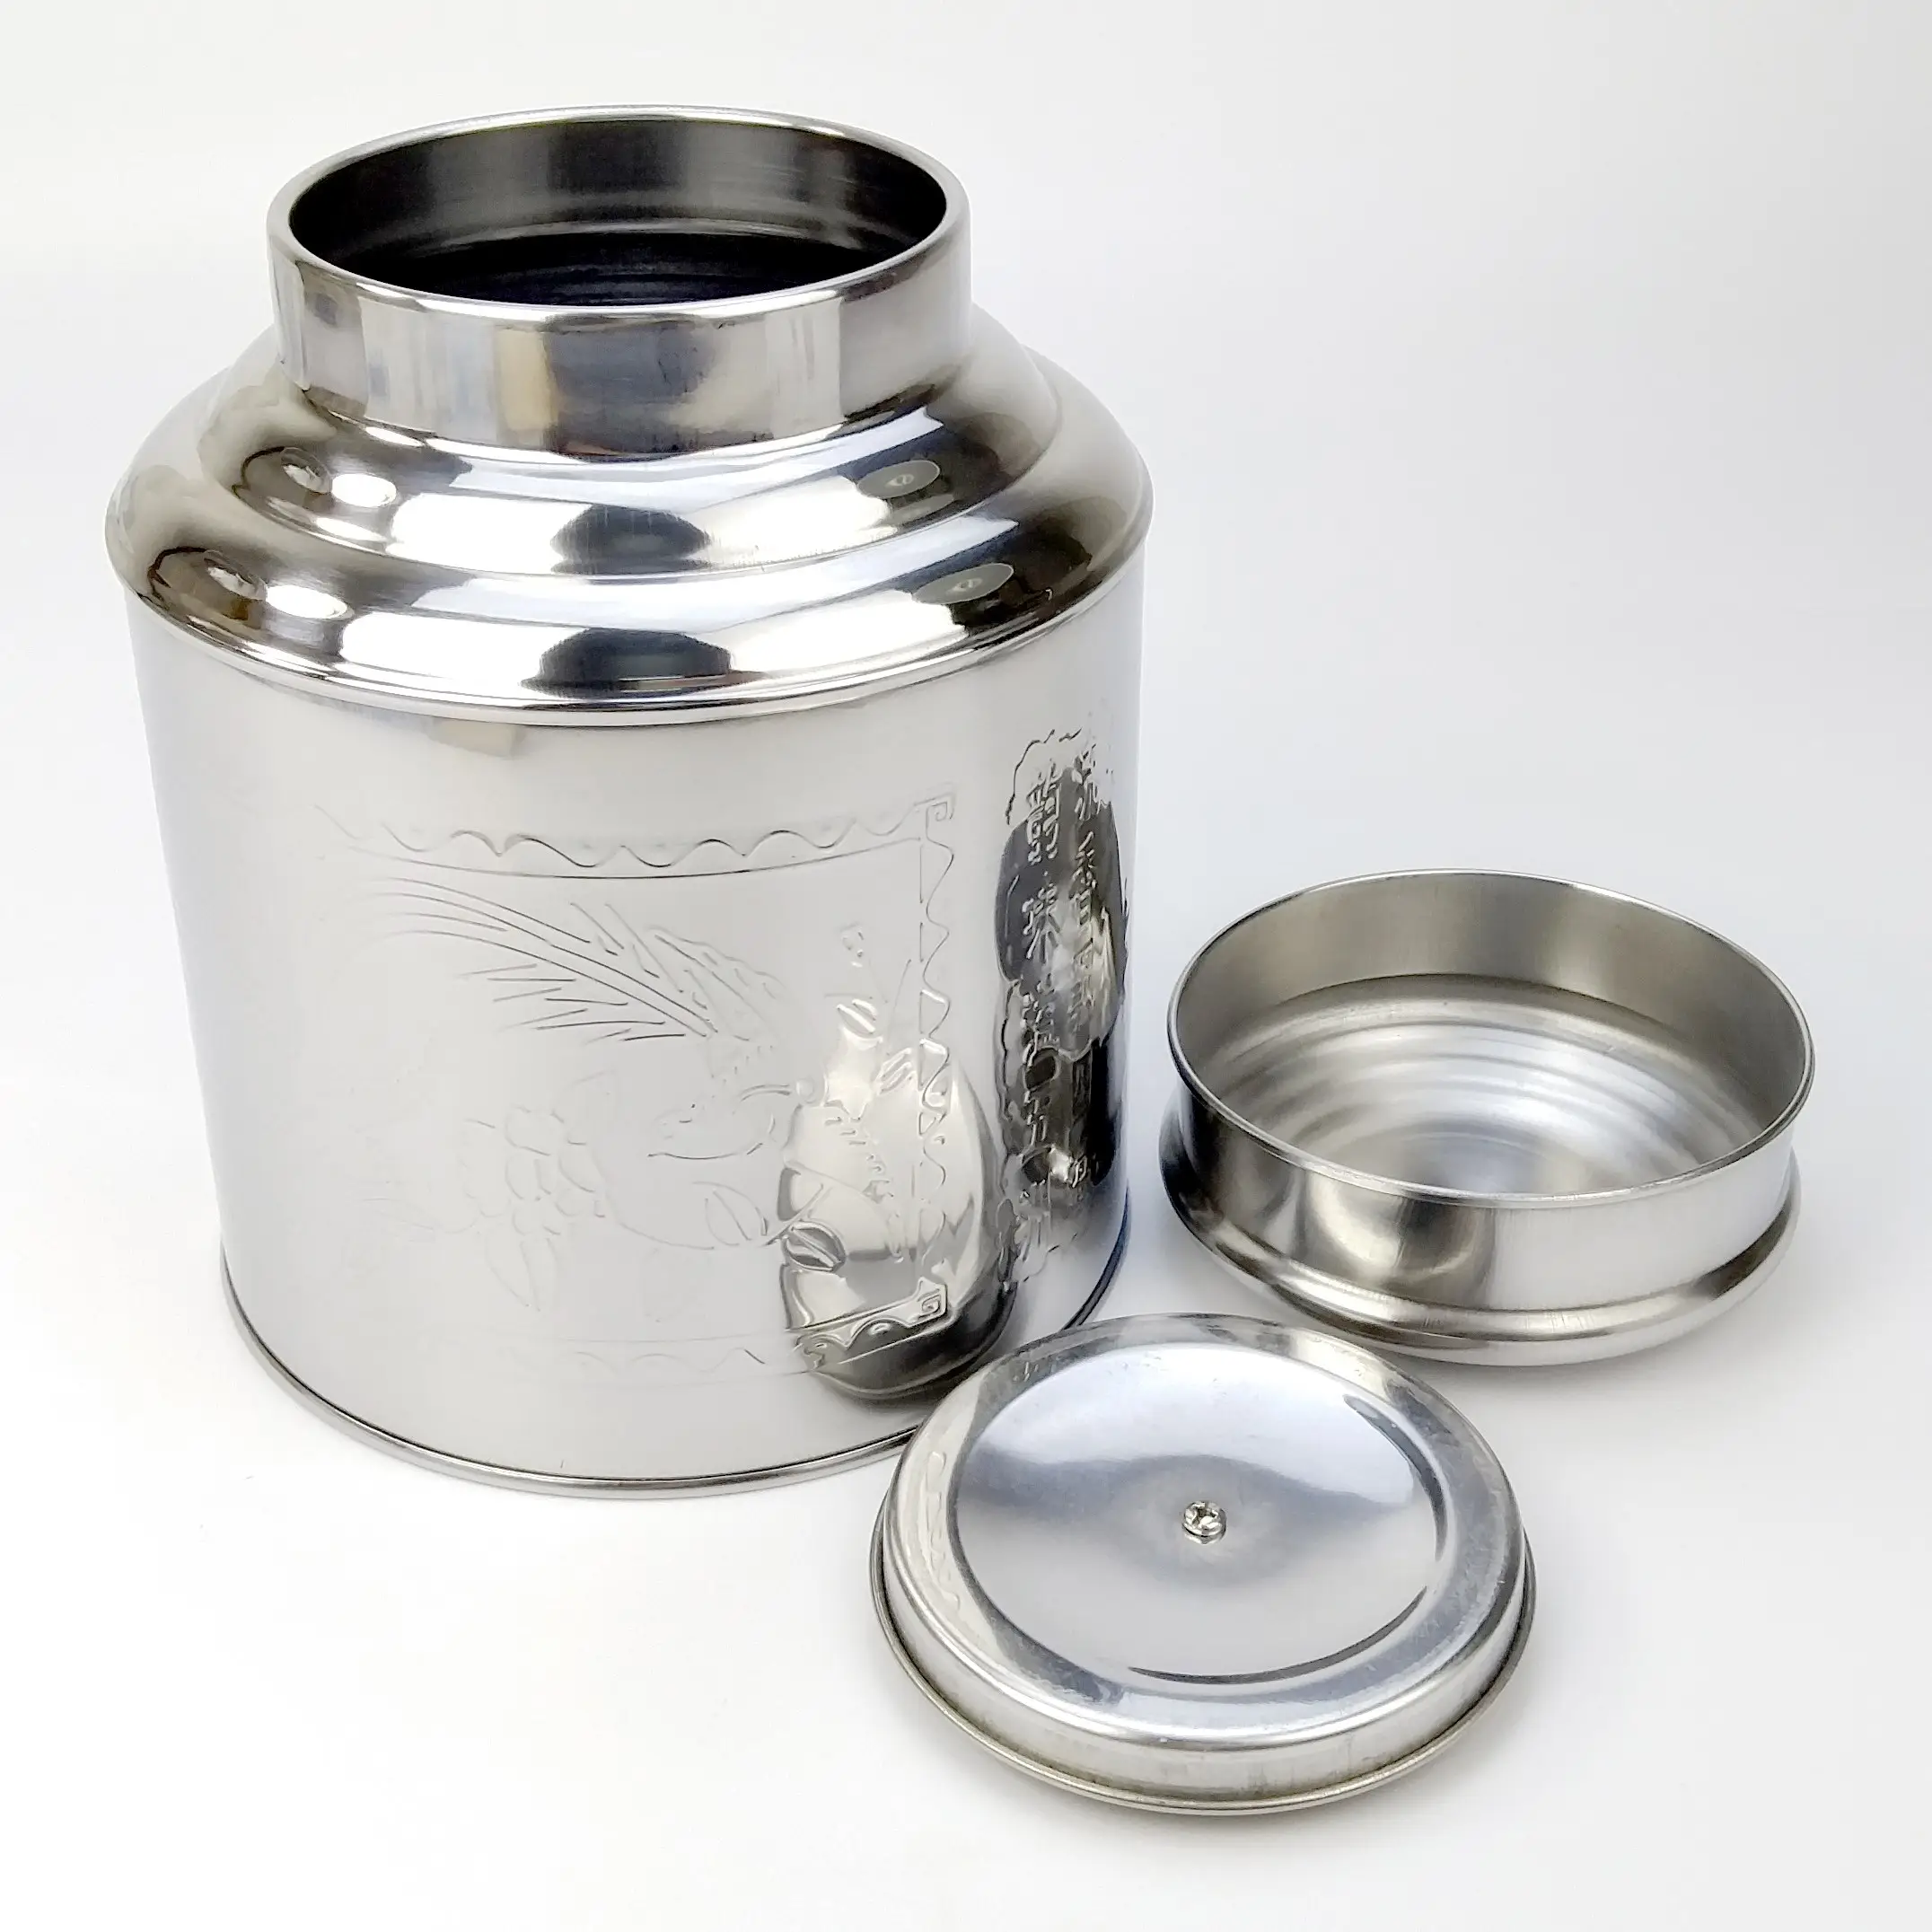 Großhandel 1500g große Kapazität luftdichte Tee Verpackung Metall Teedose Box für losen Tee in Zylinderform